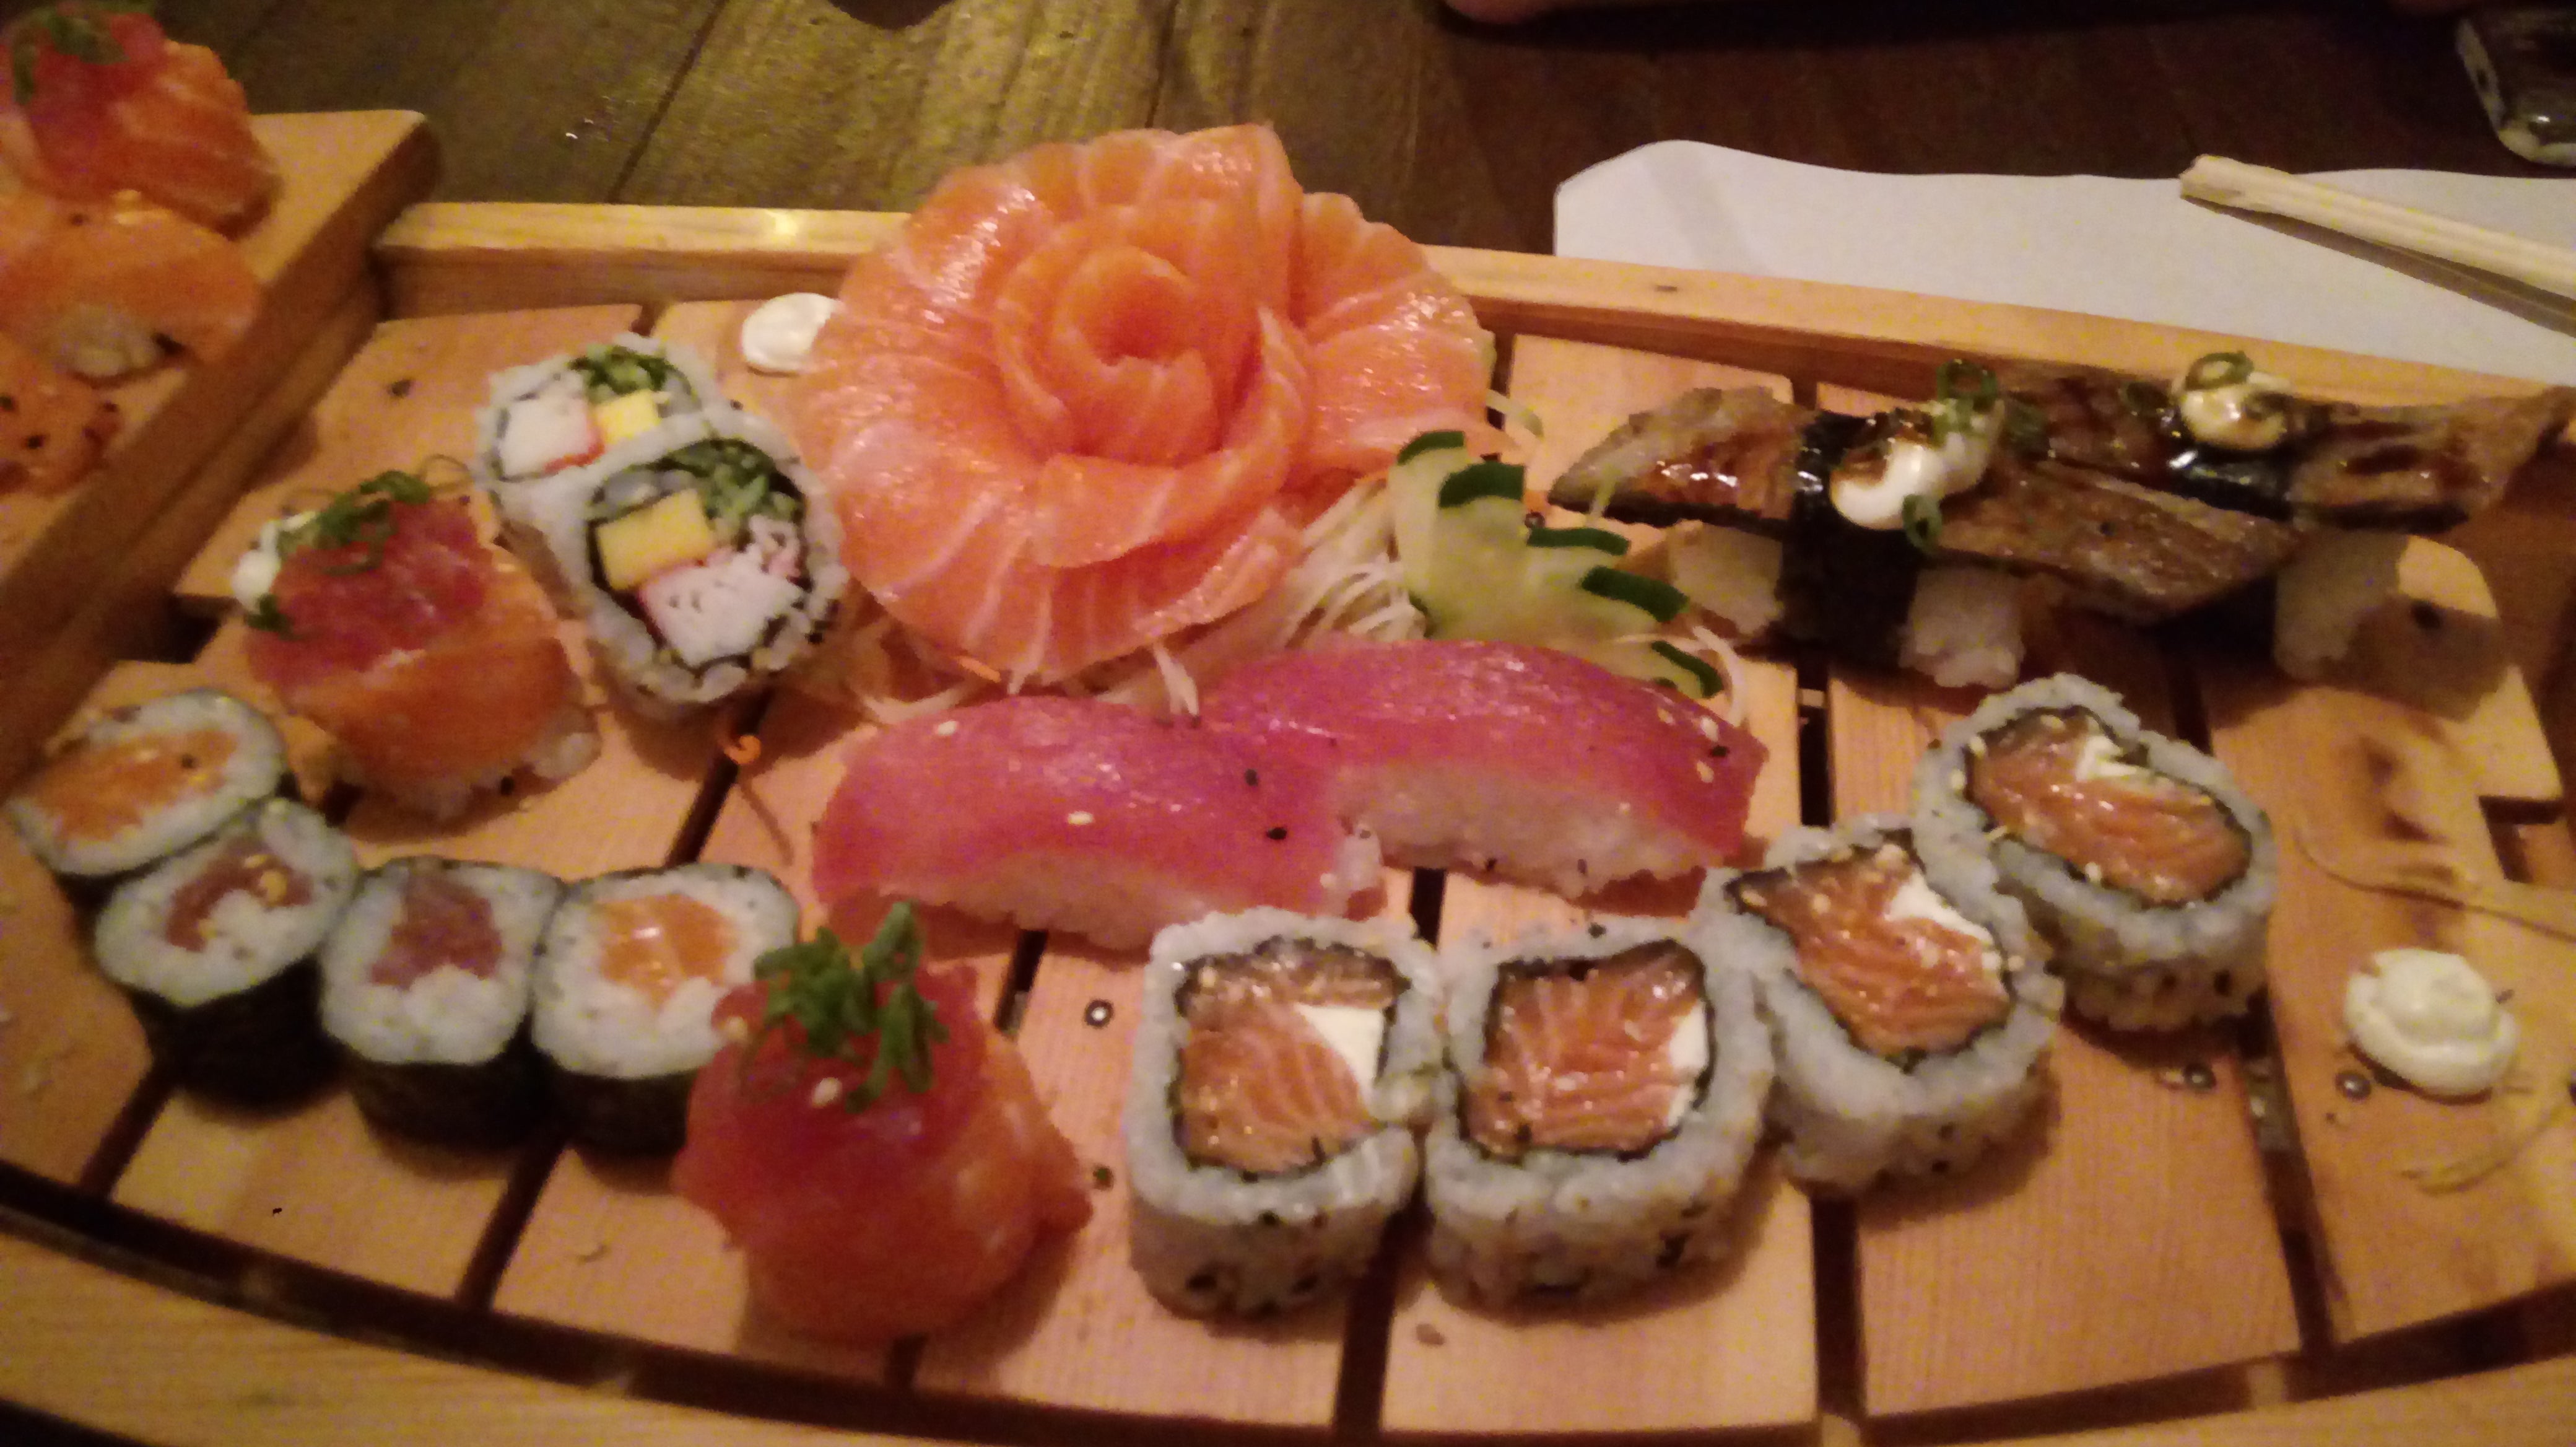 Shogun sushi